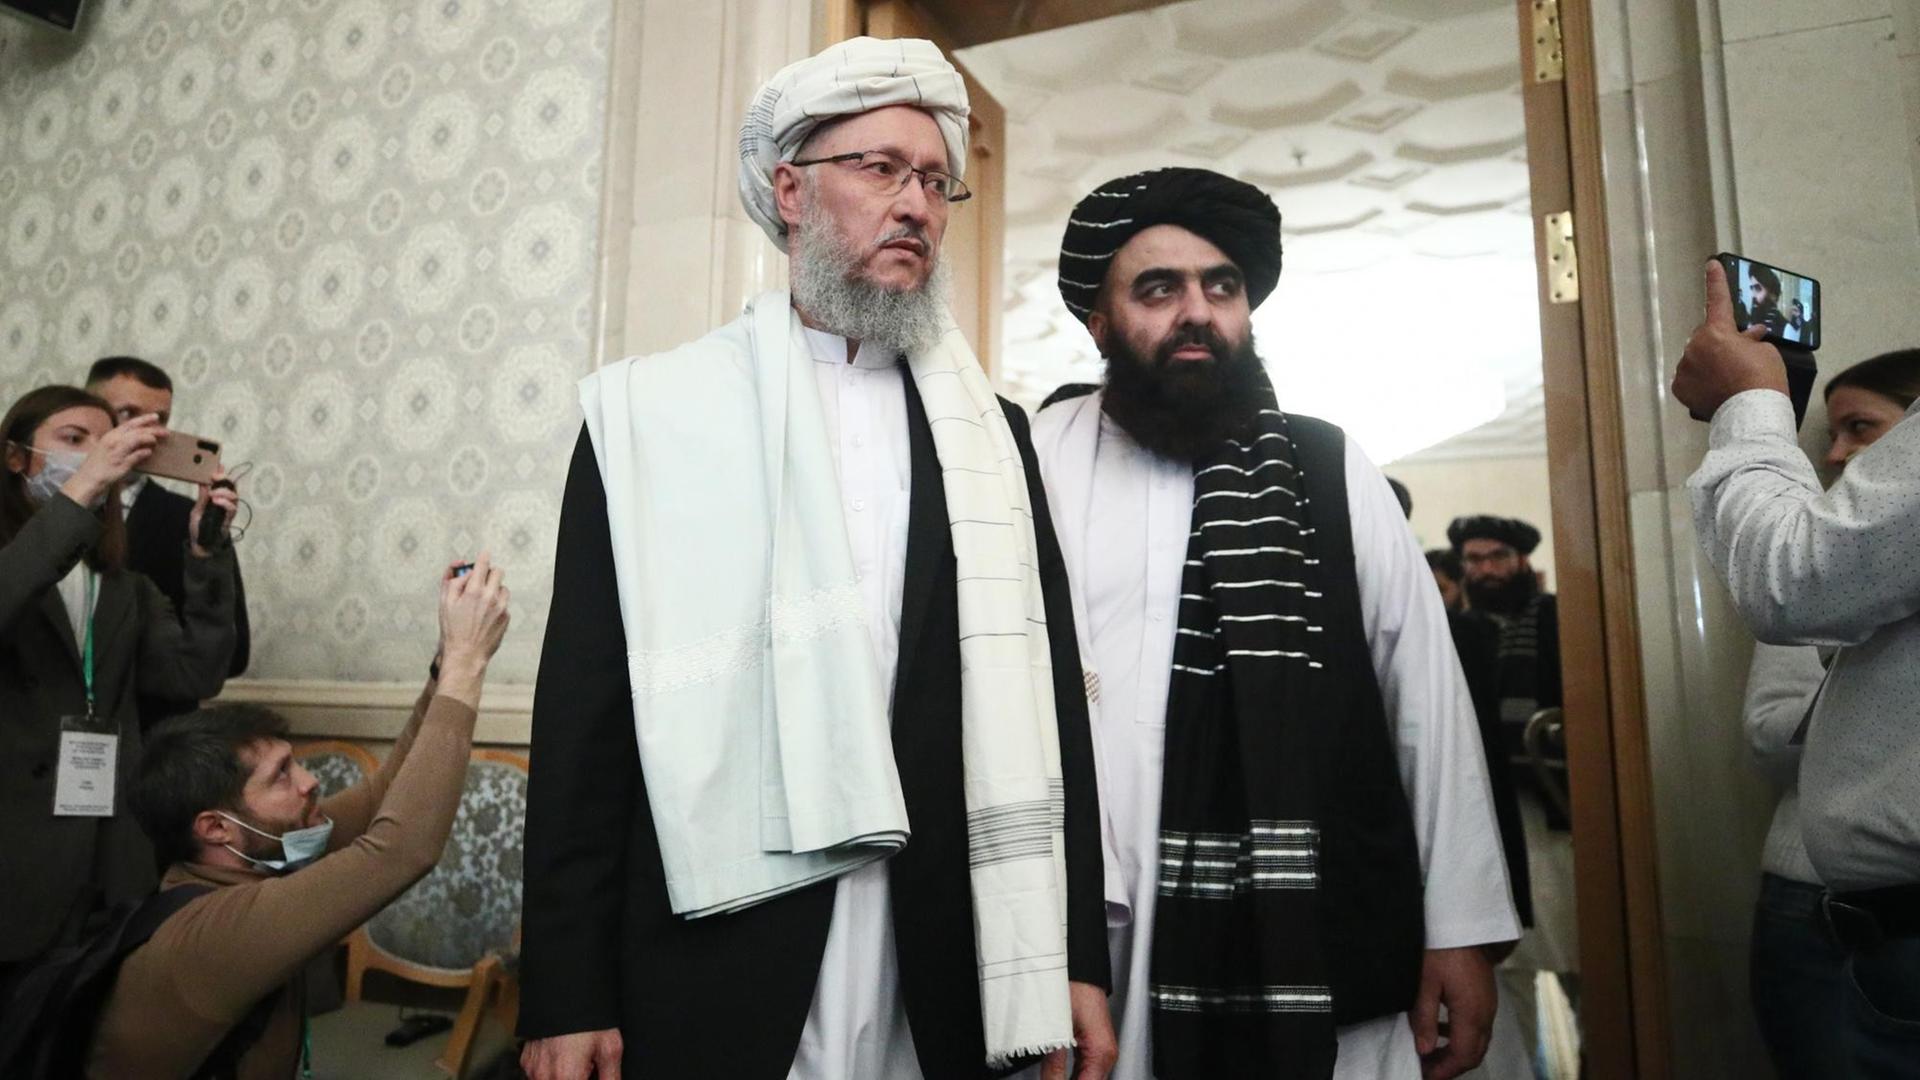 Vertreter der Taliban, der amtierende Außenminister Amir Khan Muttaqi und der stellvertretende Ministerpräsident Abdul Salam Hanafi, beim Treffen des Moskauer Formats zur Lage in Afghanistan